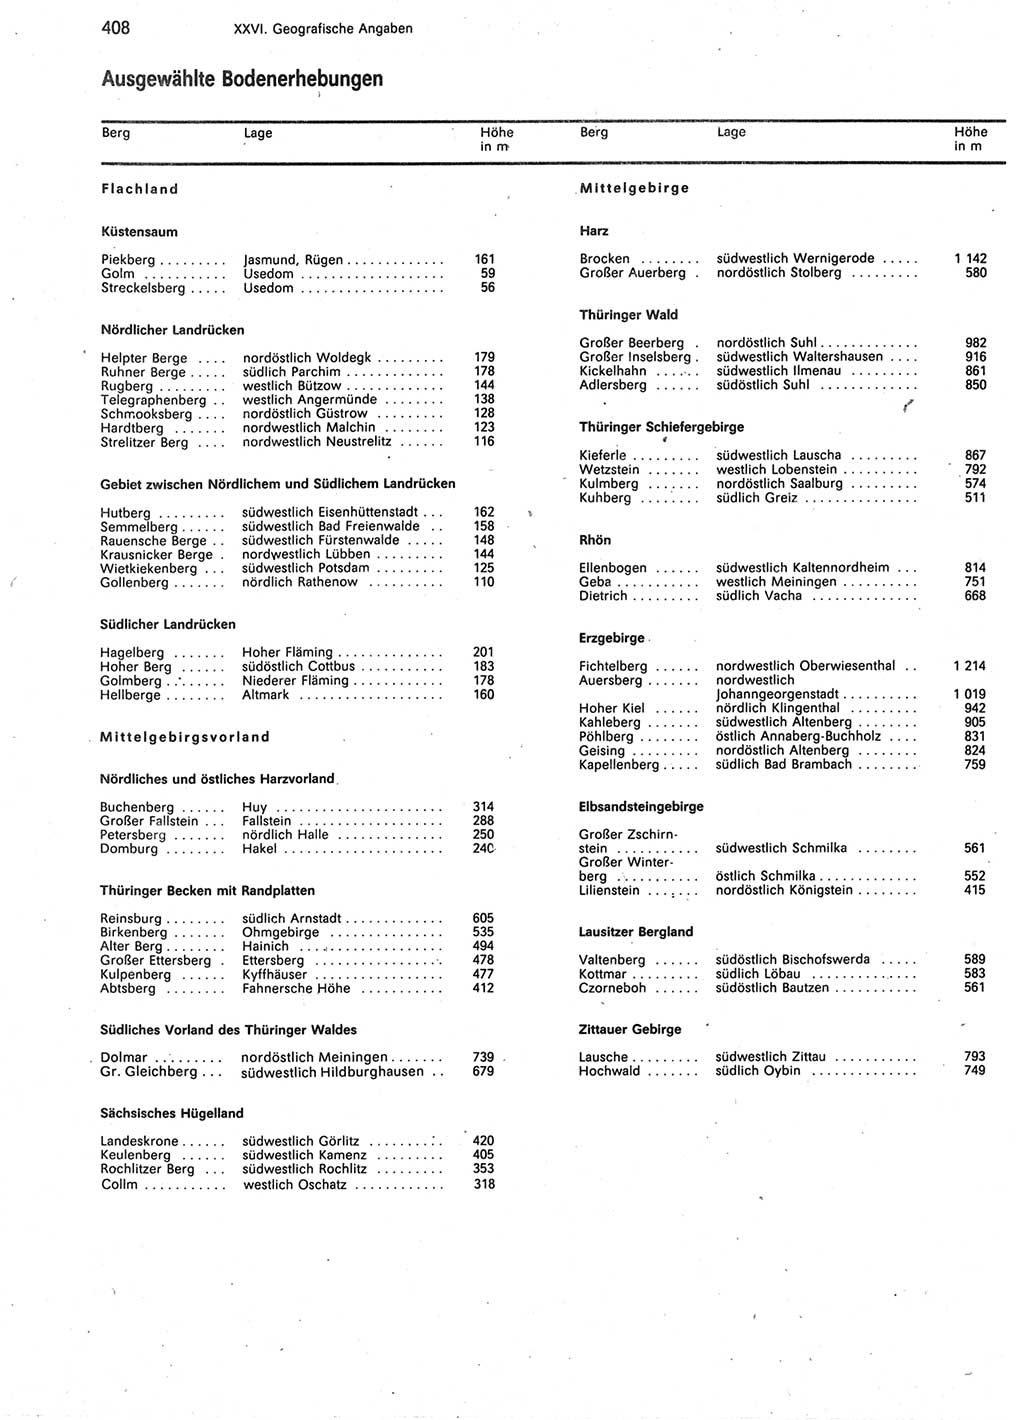 Statistisches Jahrbuch der Deutschen Demokratischen Republik (DDR) 1987, Seite 408 (Stat. Jb. DDR 1987, S. 408)